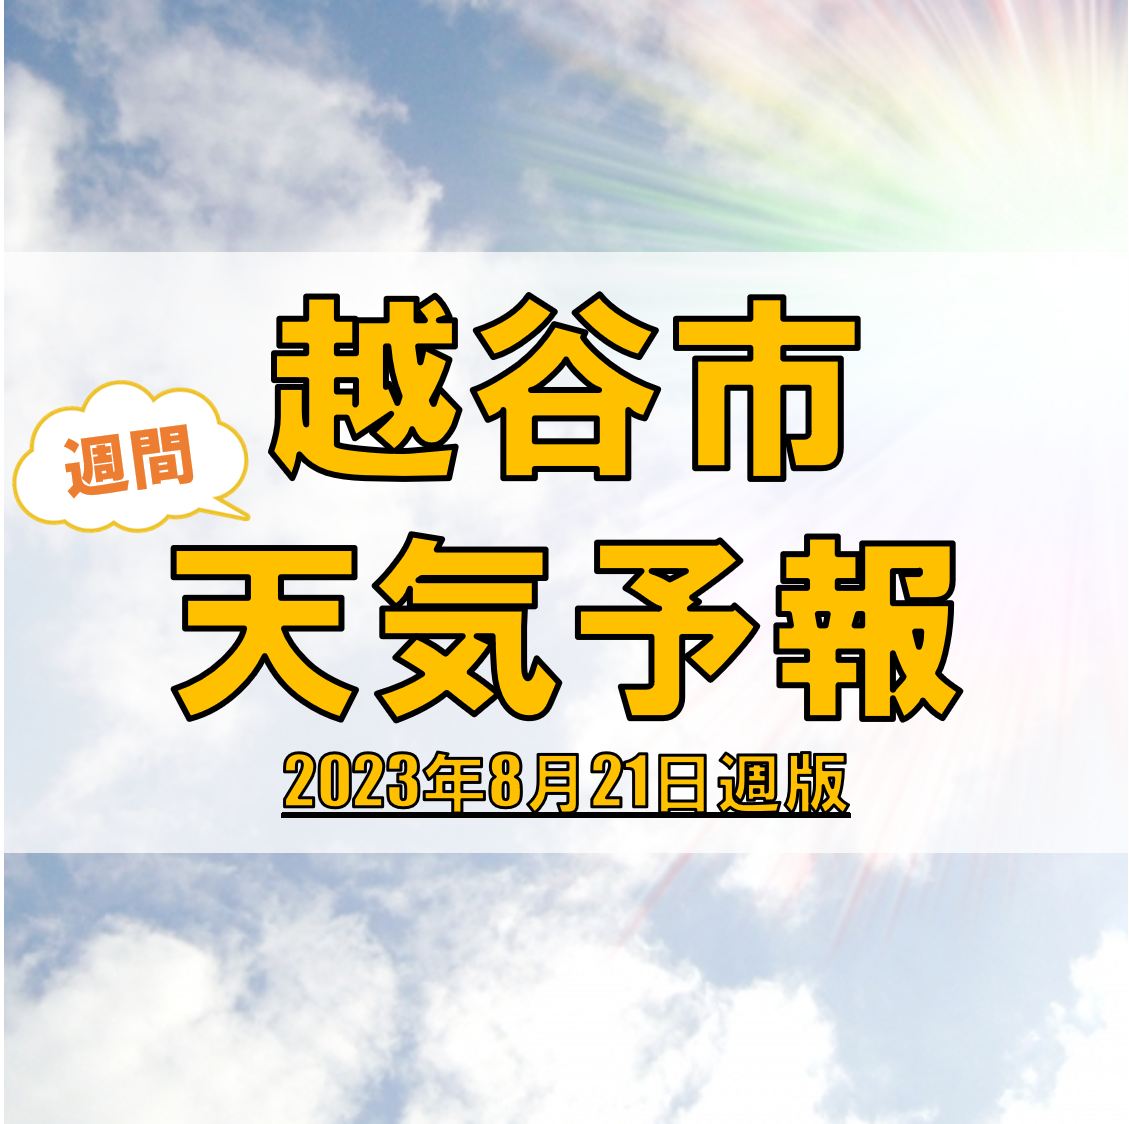 越谷市の天気 週間予報【2023年8月21日週】